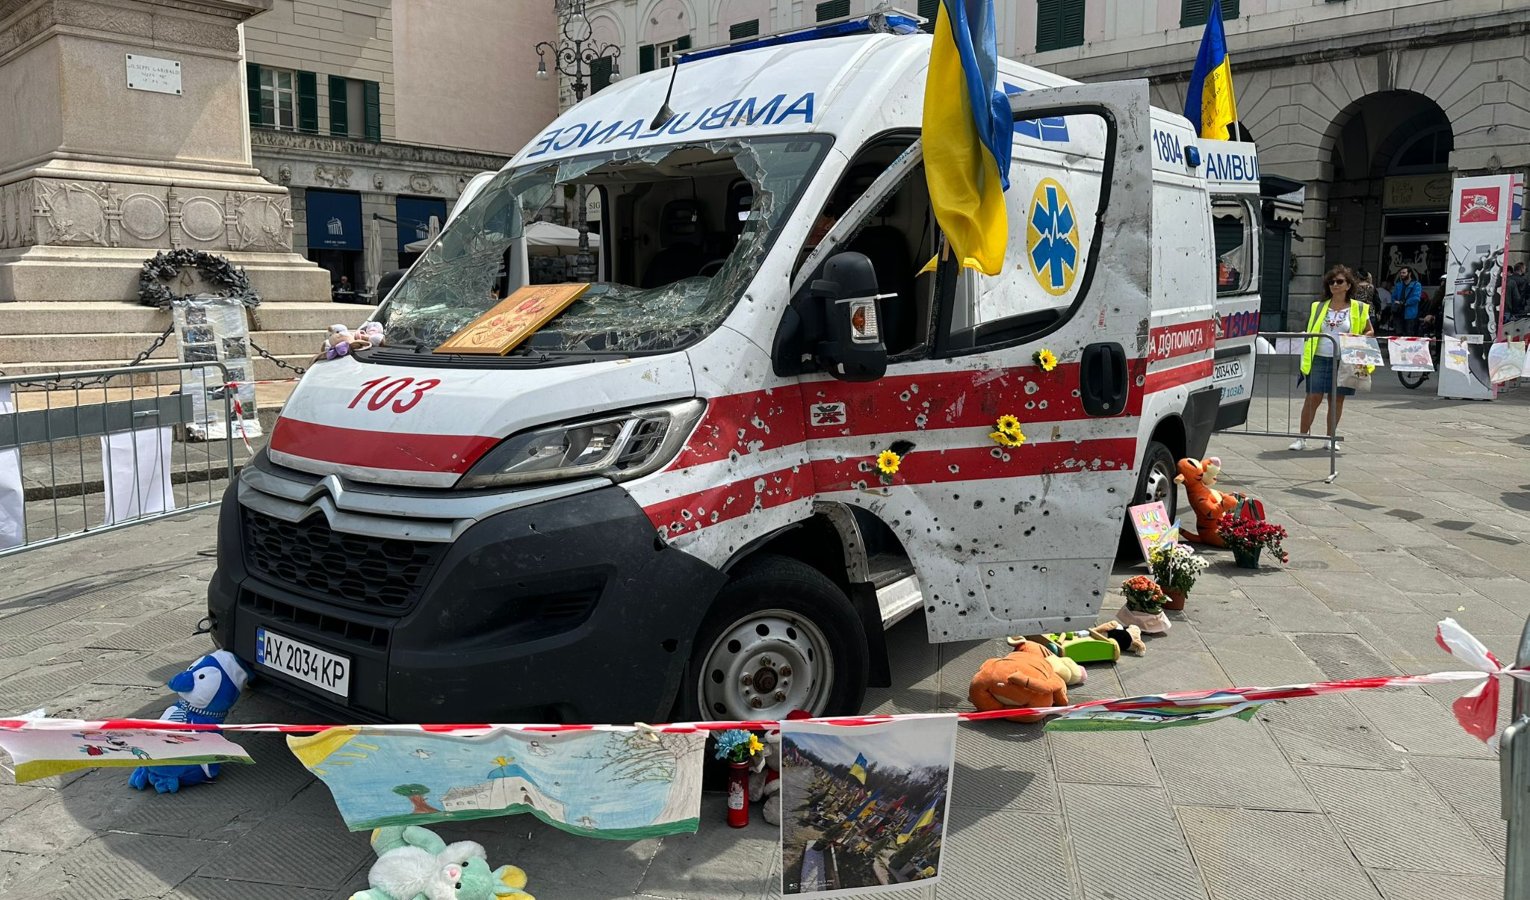 Guerra in Ucraina, a Genova un'ambulanza crivellata:  Situazione è peggiorata 